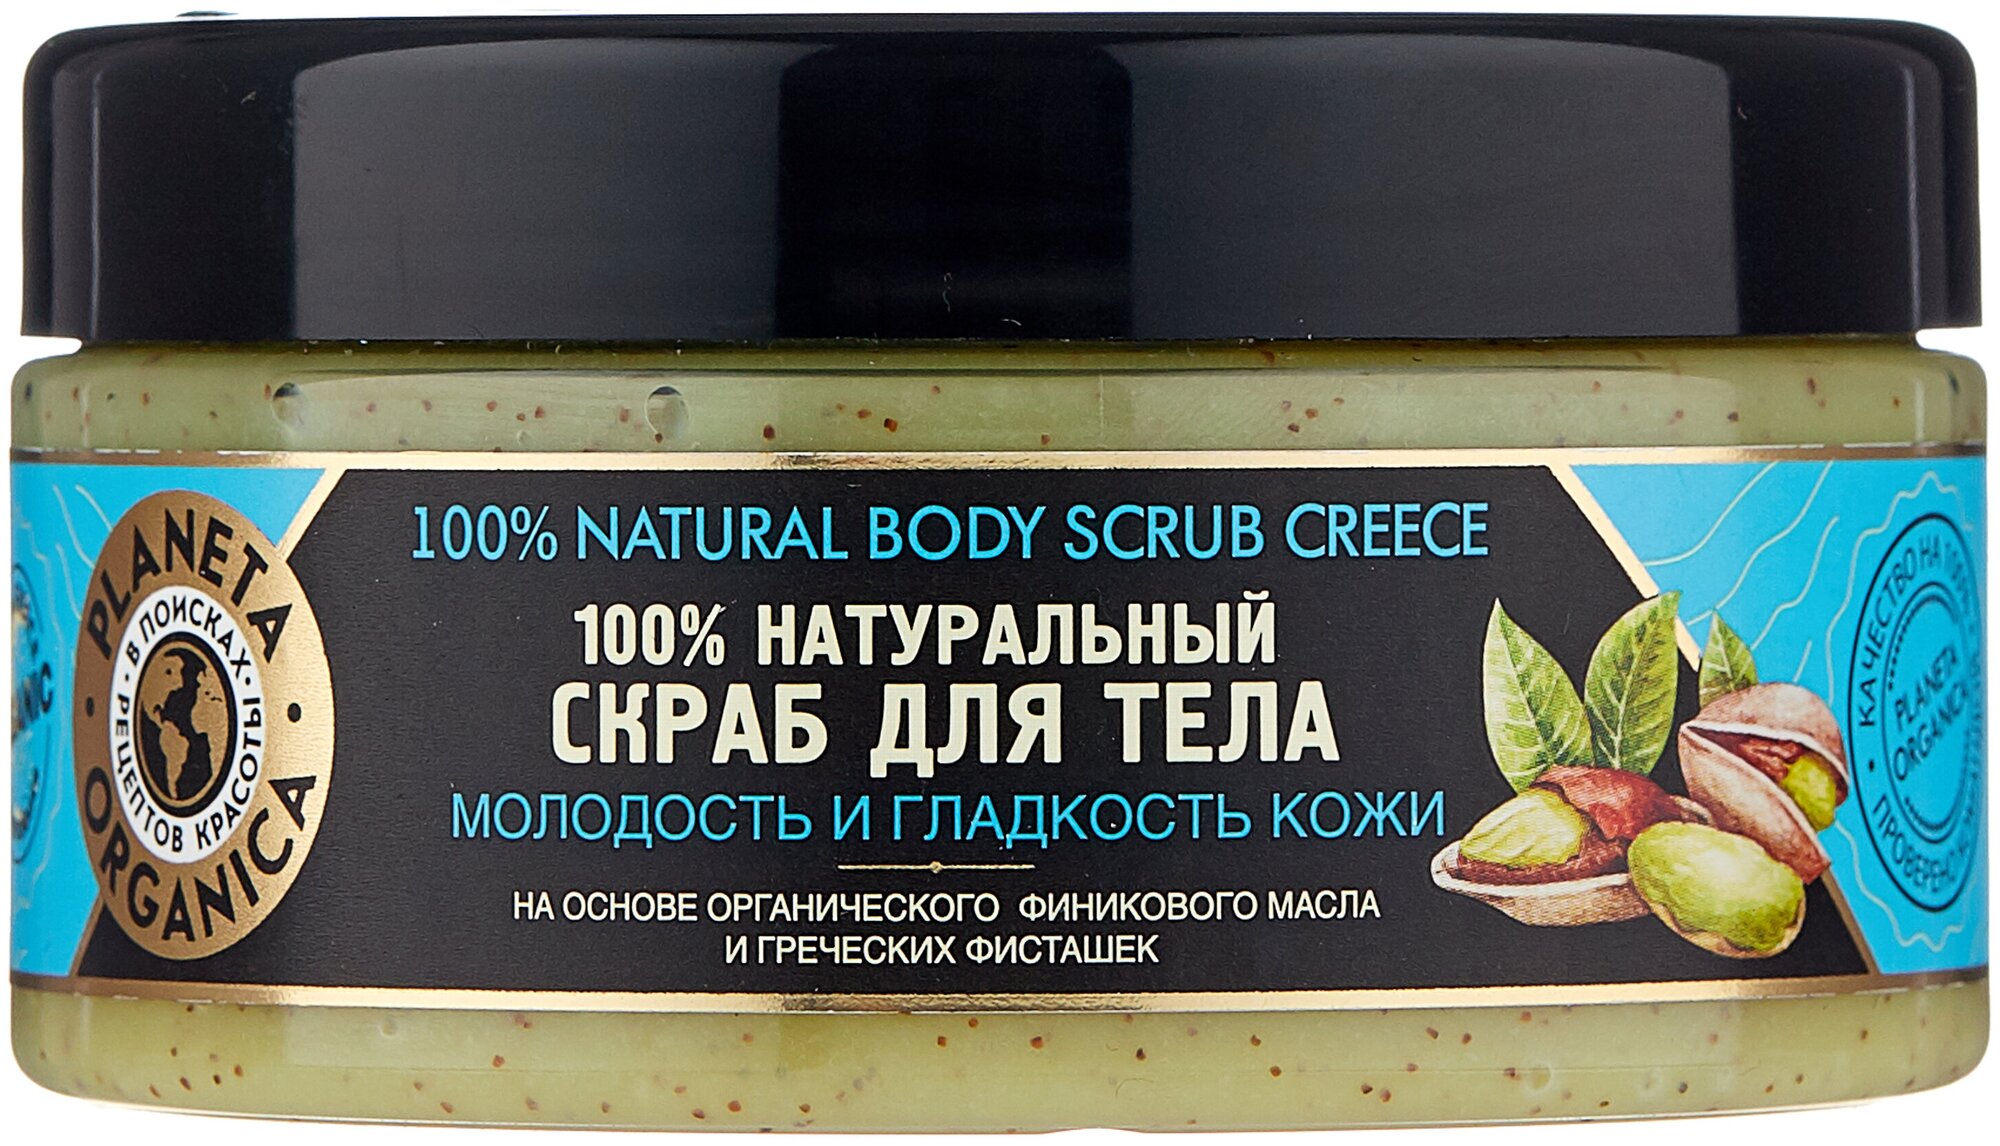 Скраб для тела Греческие фисташки и органическое финиковое масло Planeta Organica, 300 мл